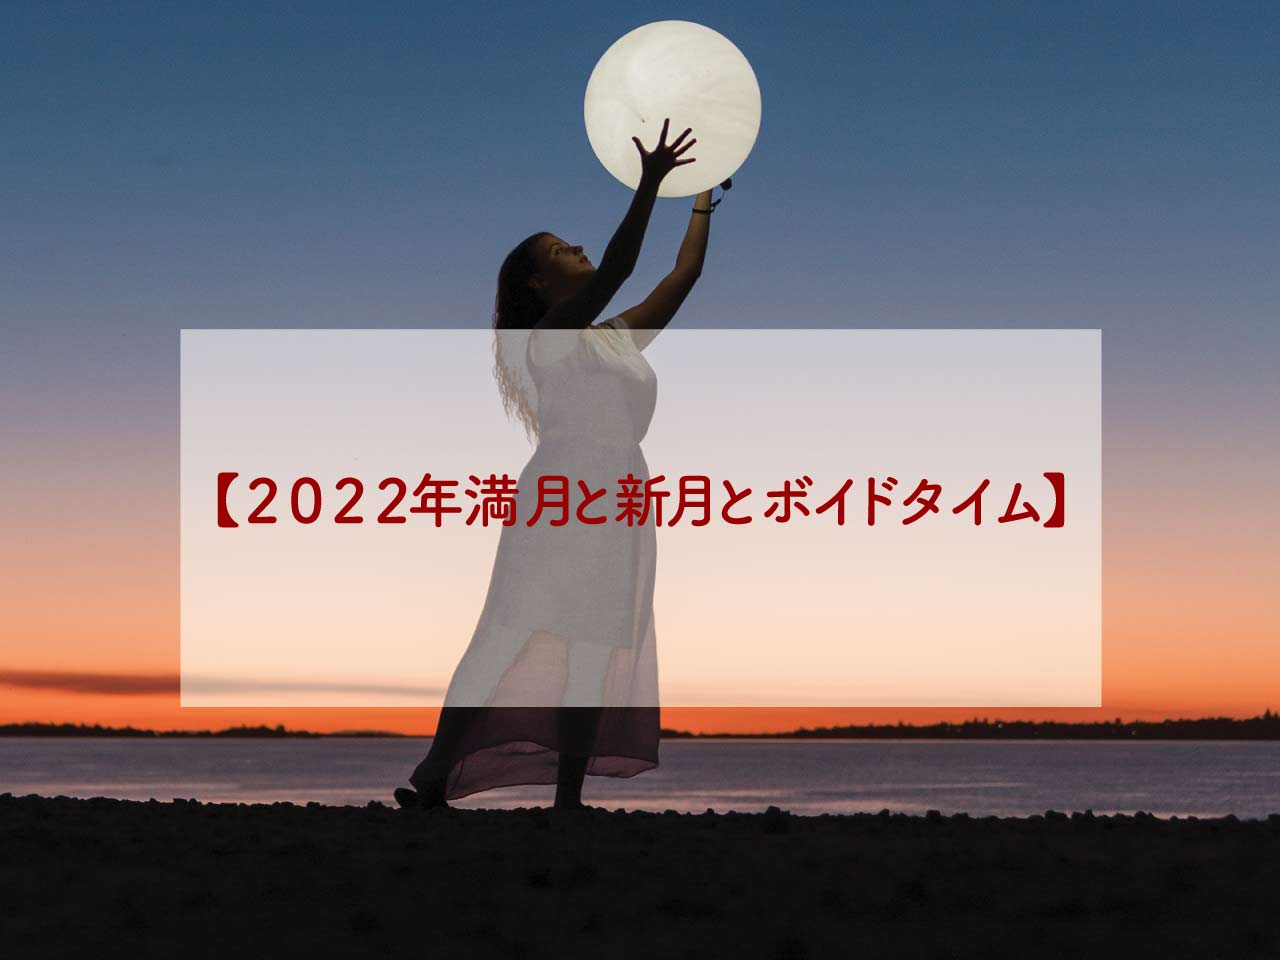 2022年の新月ボイドタイムと満月ボイドタイムとスピリチュアルな意味と願い事